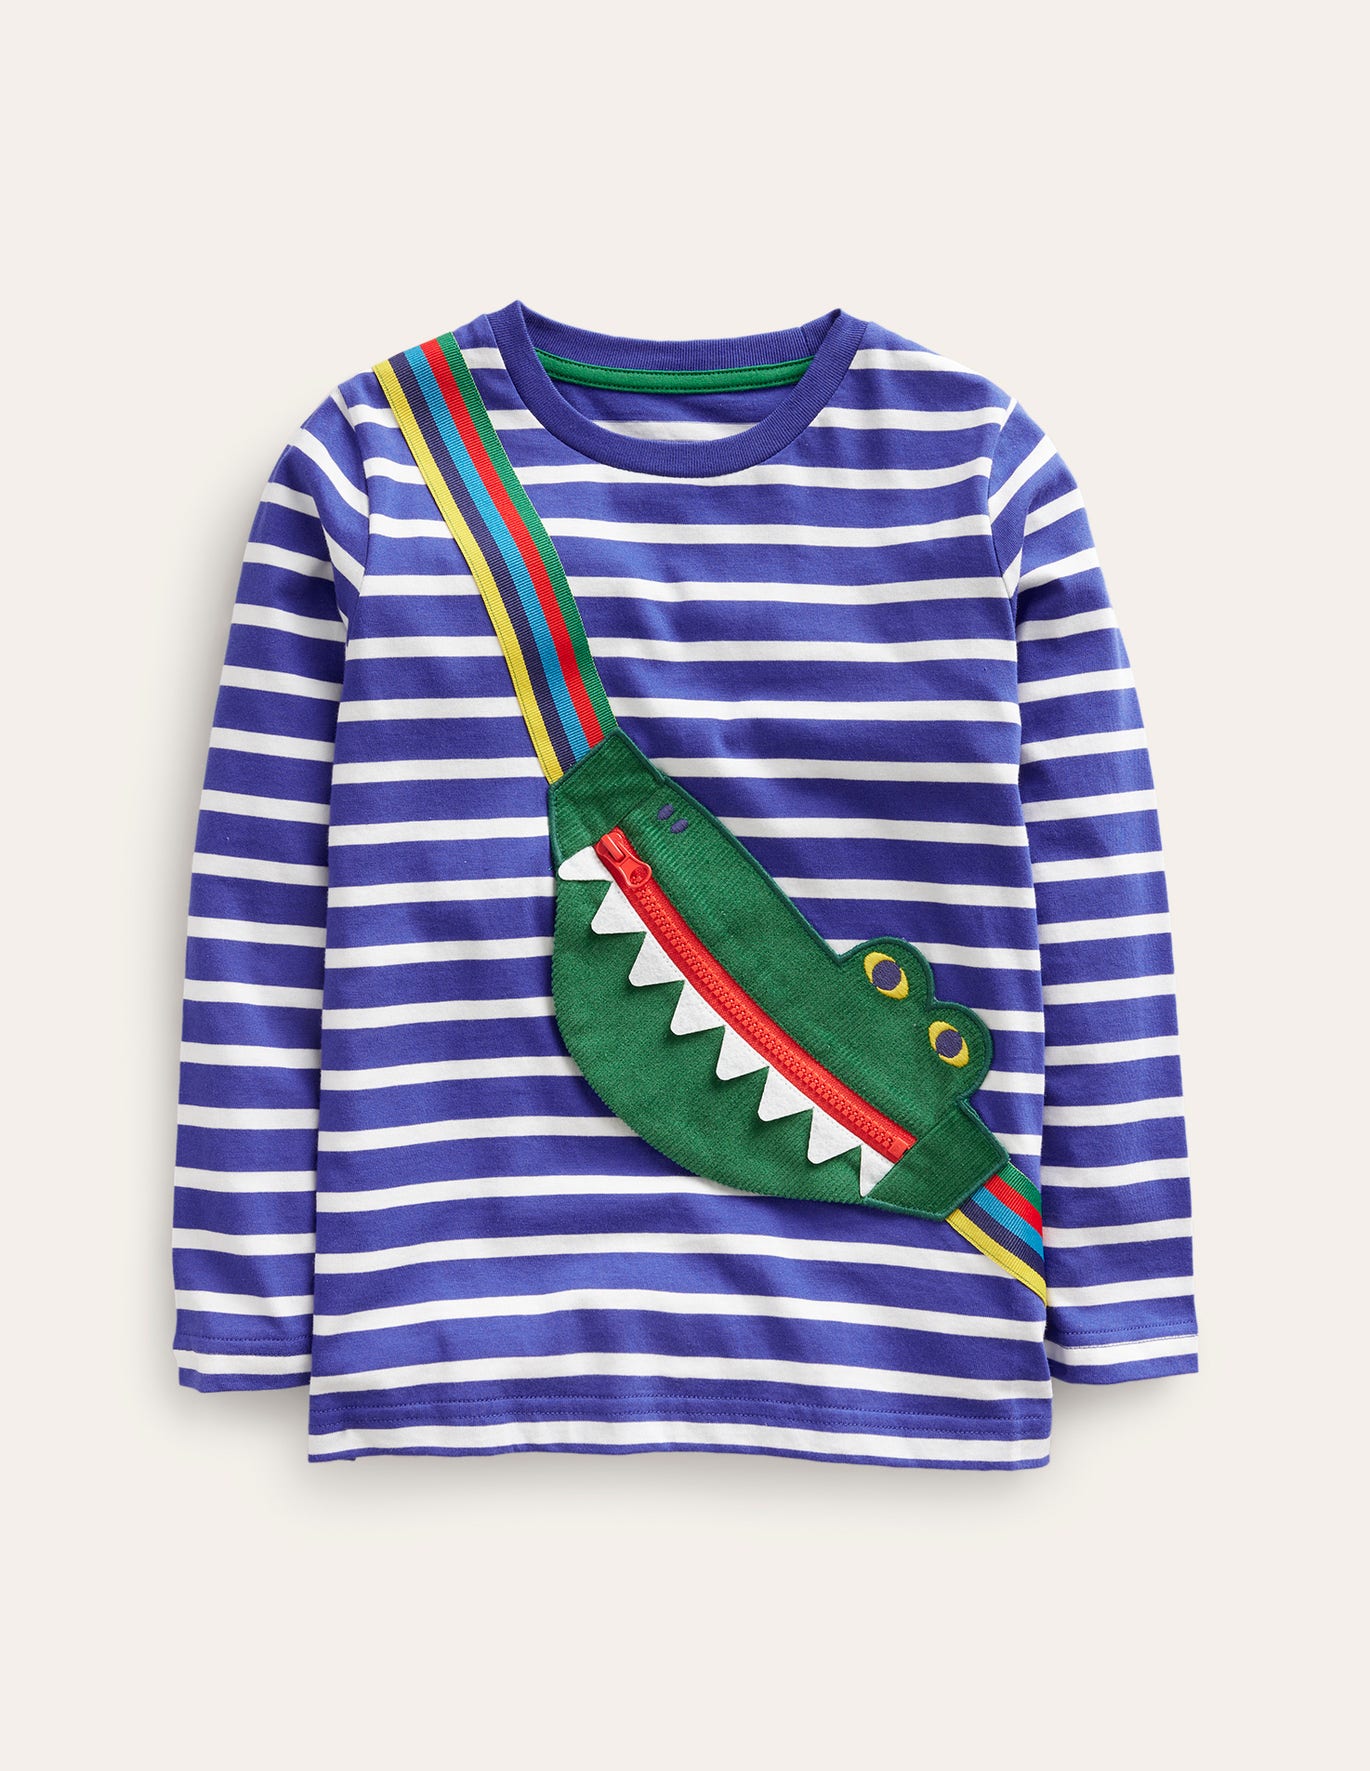 Boden Novelty Bag T-shirt - Bluing/ Ivory Stripe